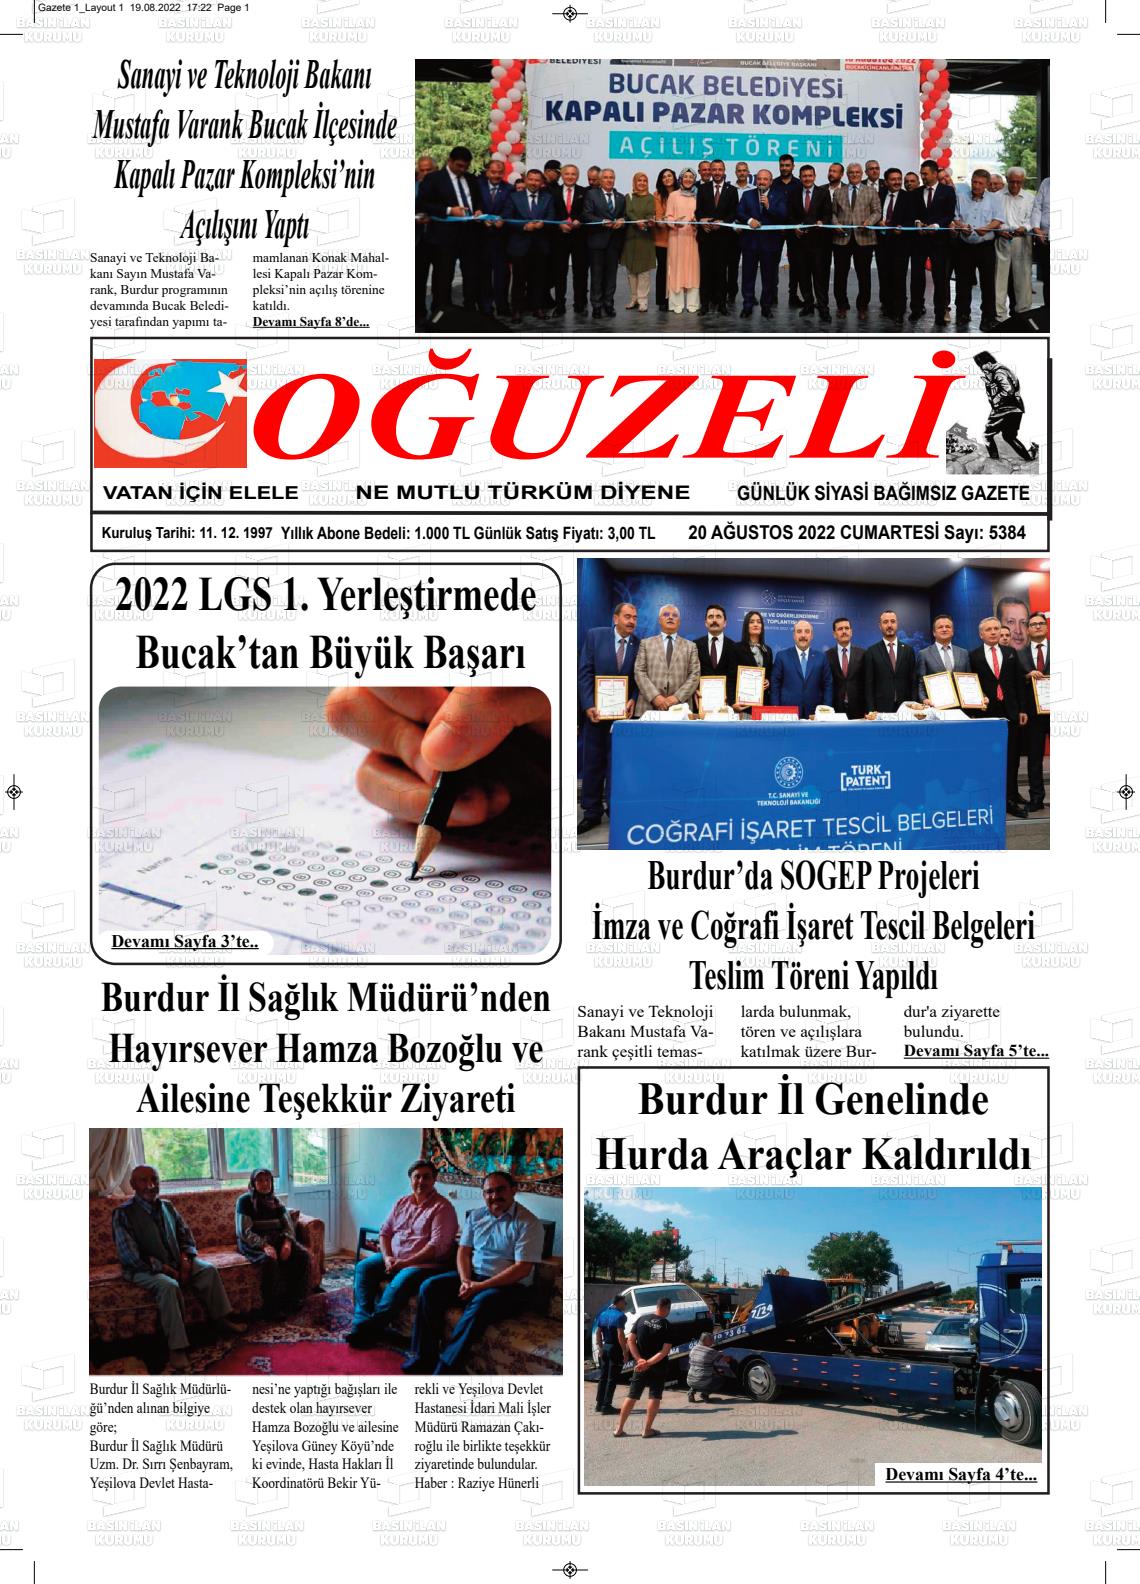 20 Ağustos 2022 Oğuzeli Gazete Manşeti